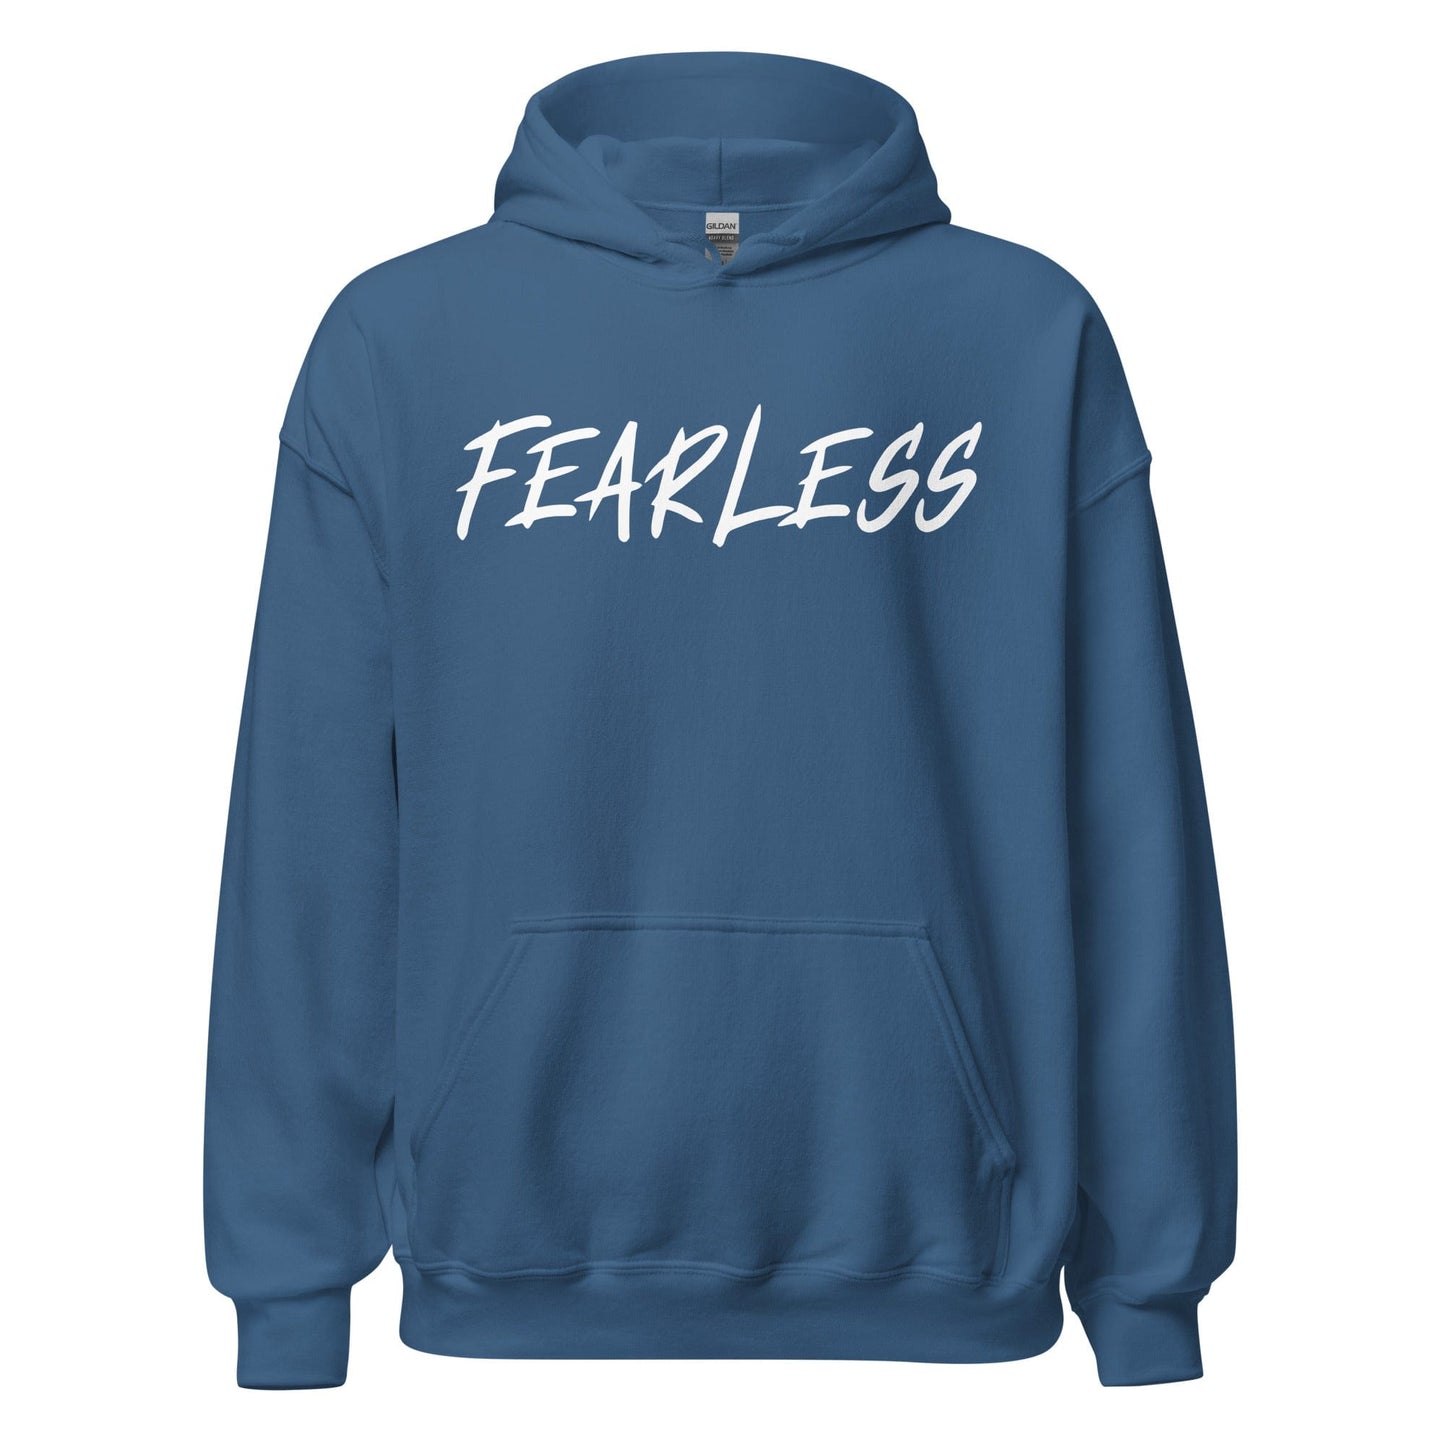 Fearless - Adult Hoodie